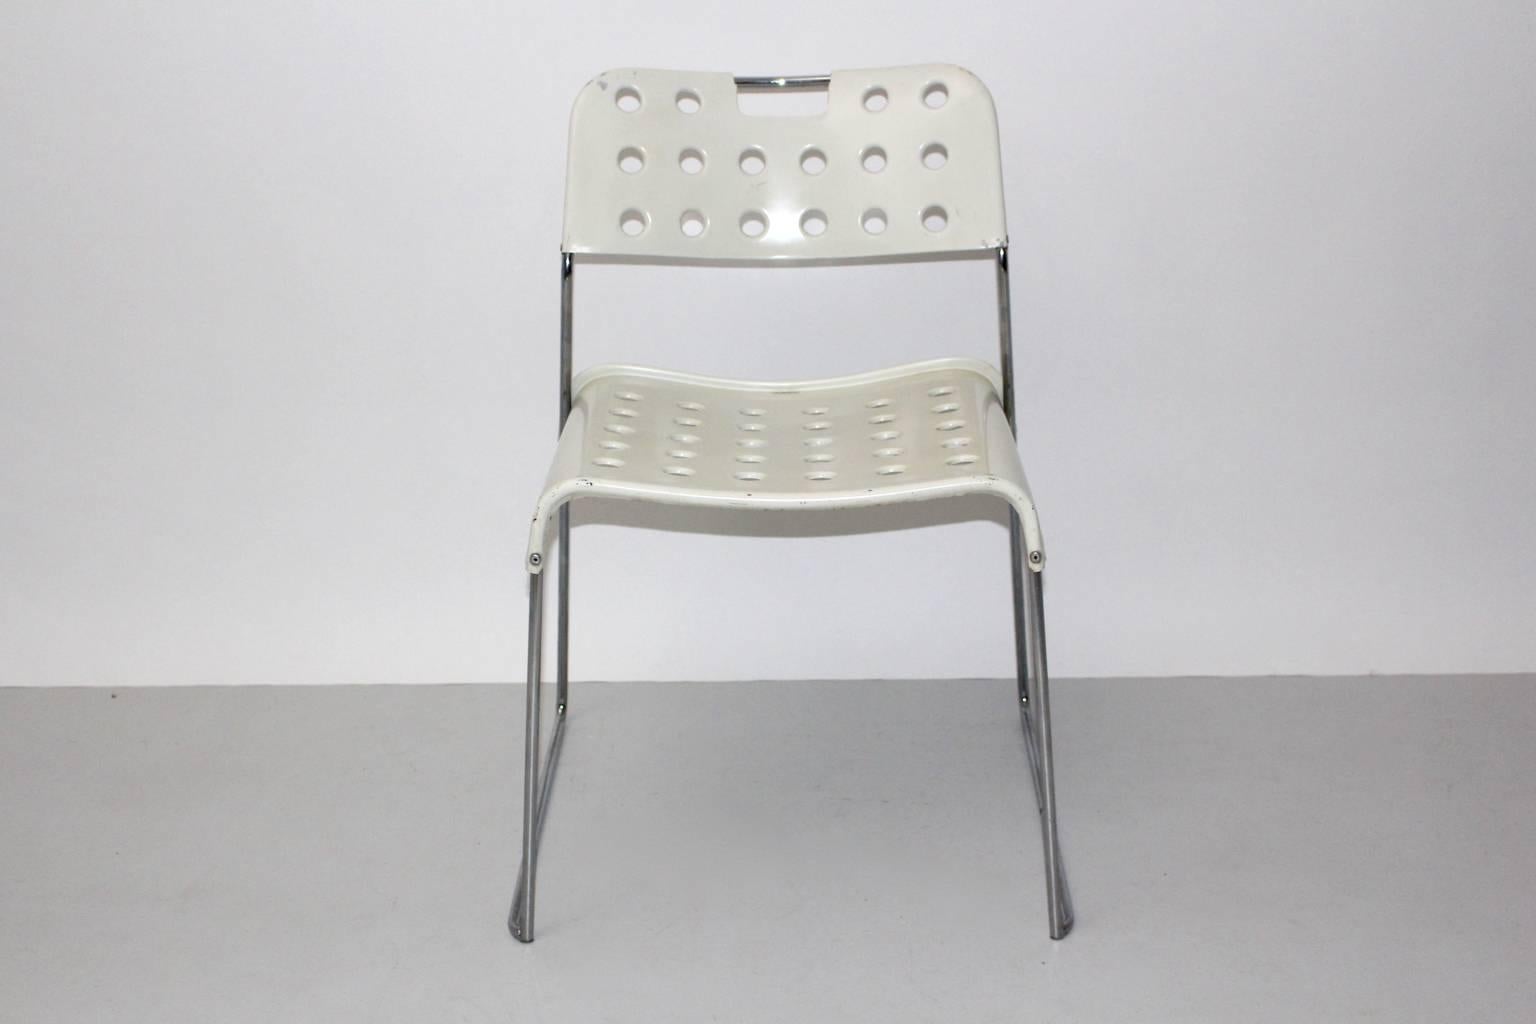 Chaise ou chaise d'appoint blanche vintage de l'ère spatiale, modèle Omstak, conçue par Rodney Kinsman en 1971 et produite par Bieffeplast, Caselle di Selvazzano.
Cette chaise extraordinaire présente une assise et un dossier perforés en métal